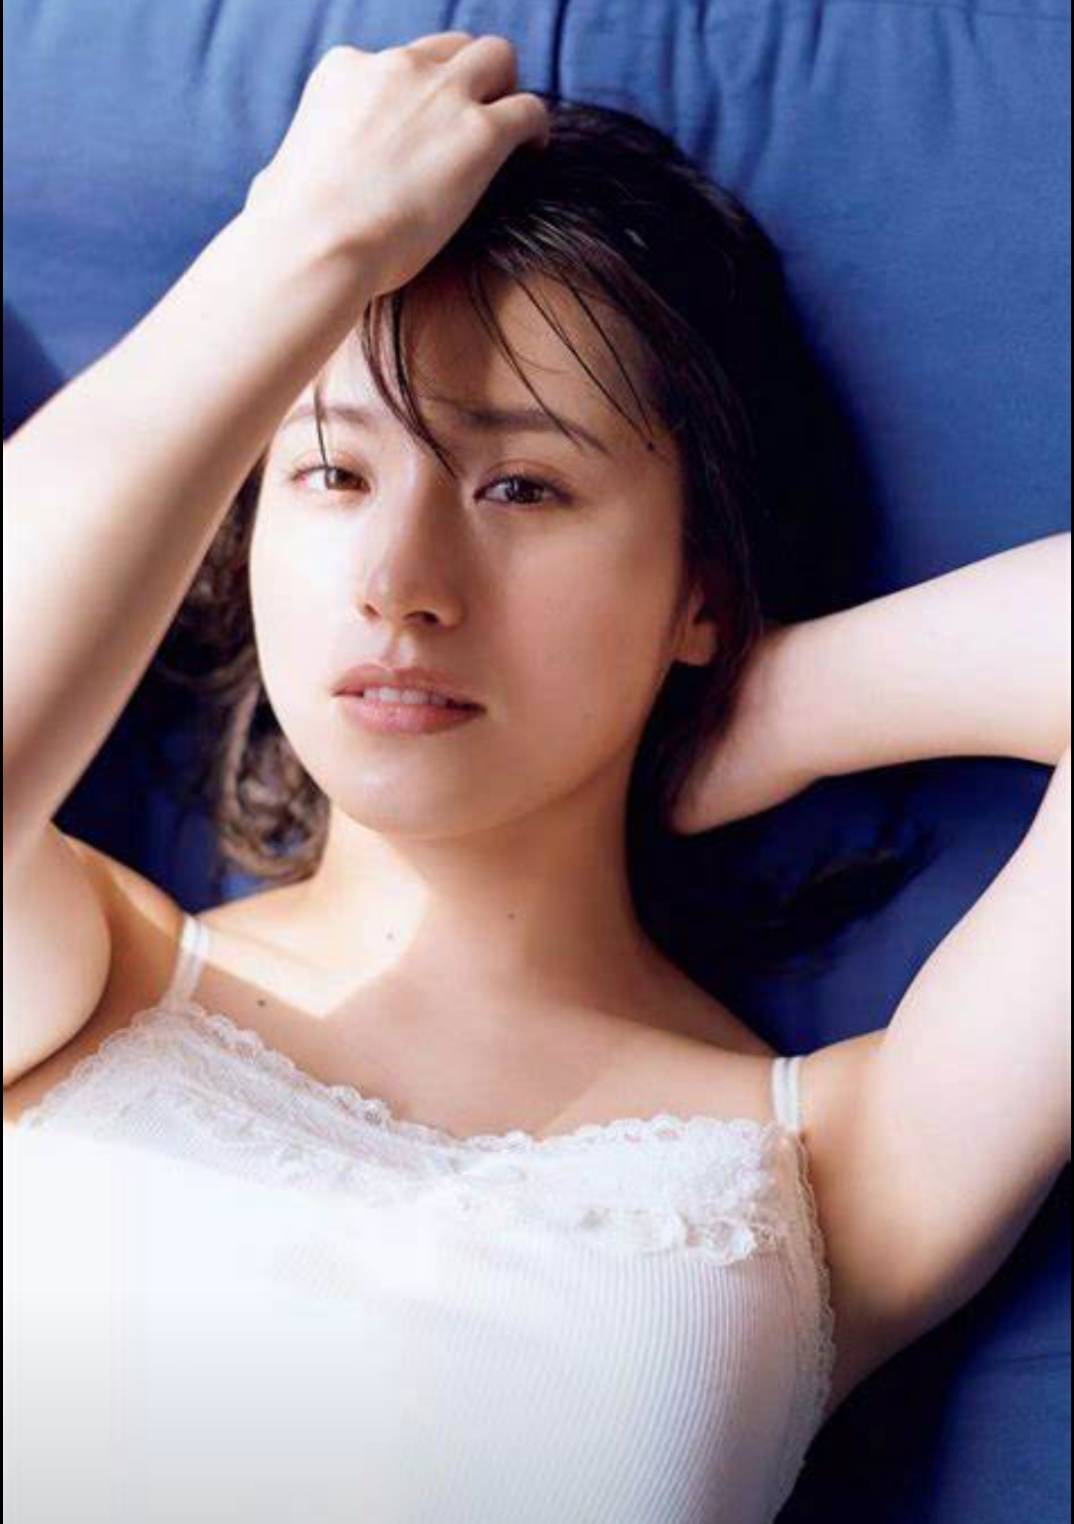 乃木坂最漂亮的姐姐--衛藤美彩 - 亞洲美女 -